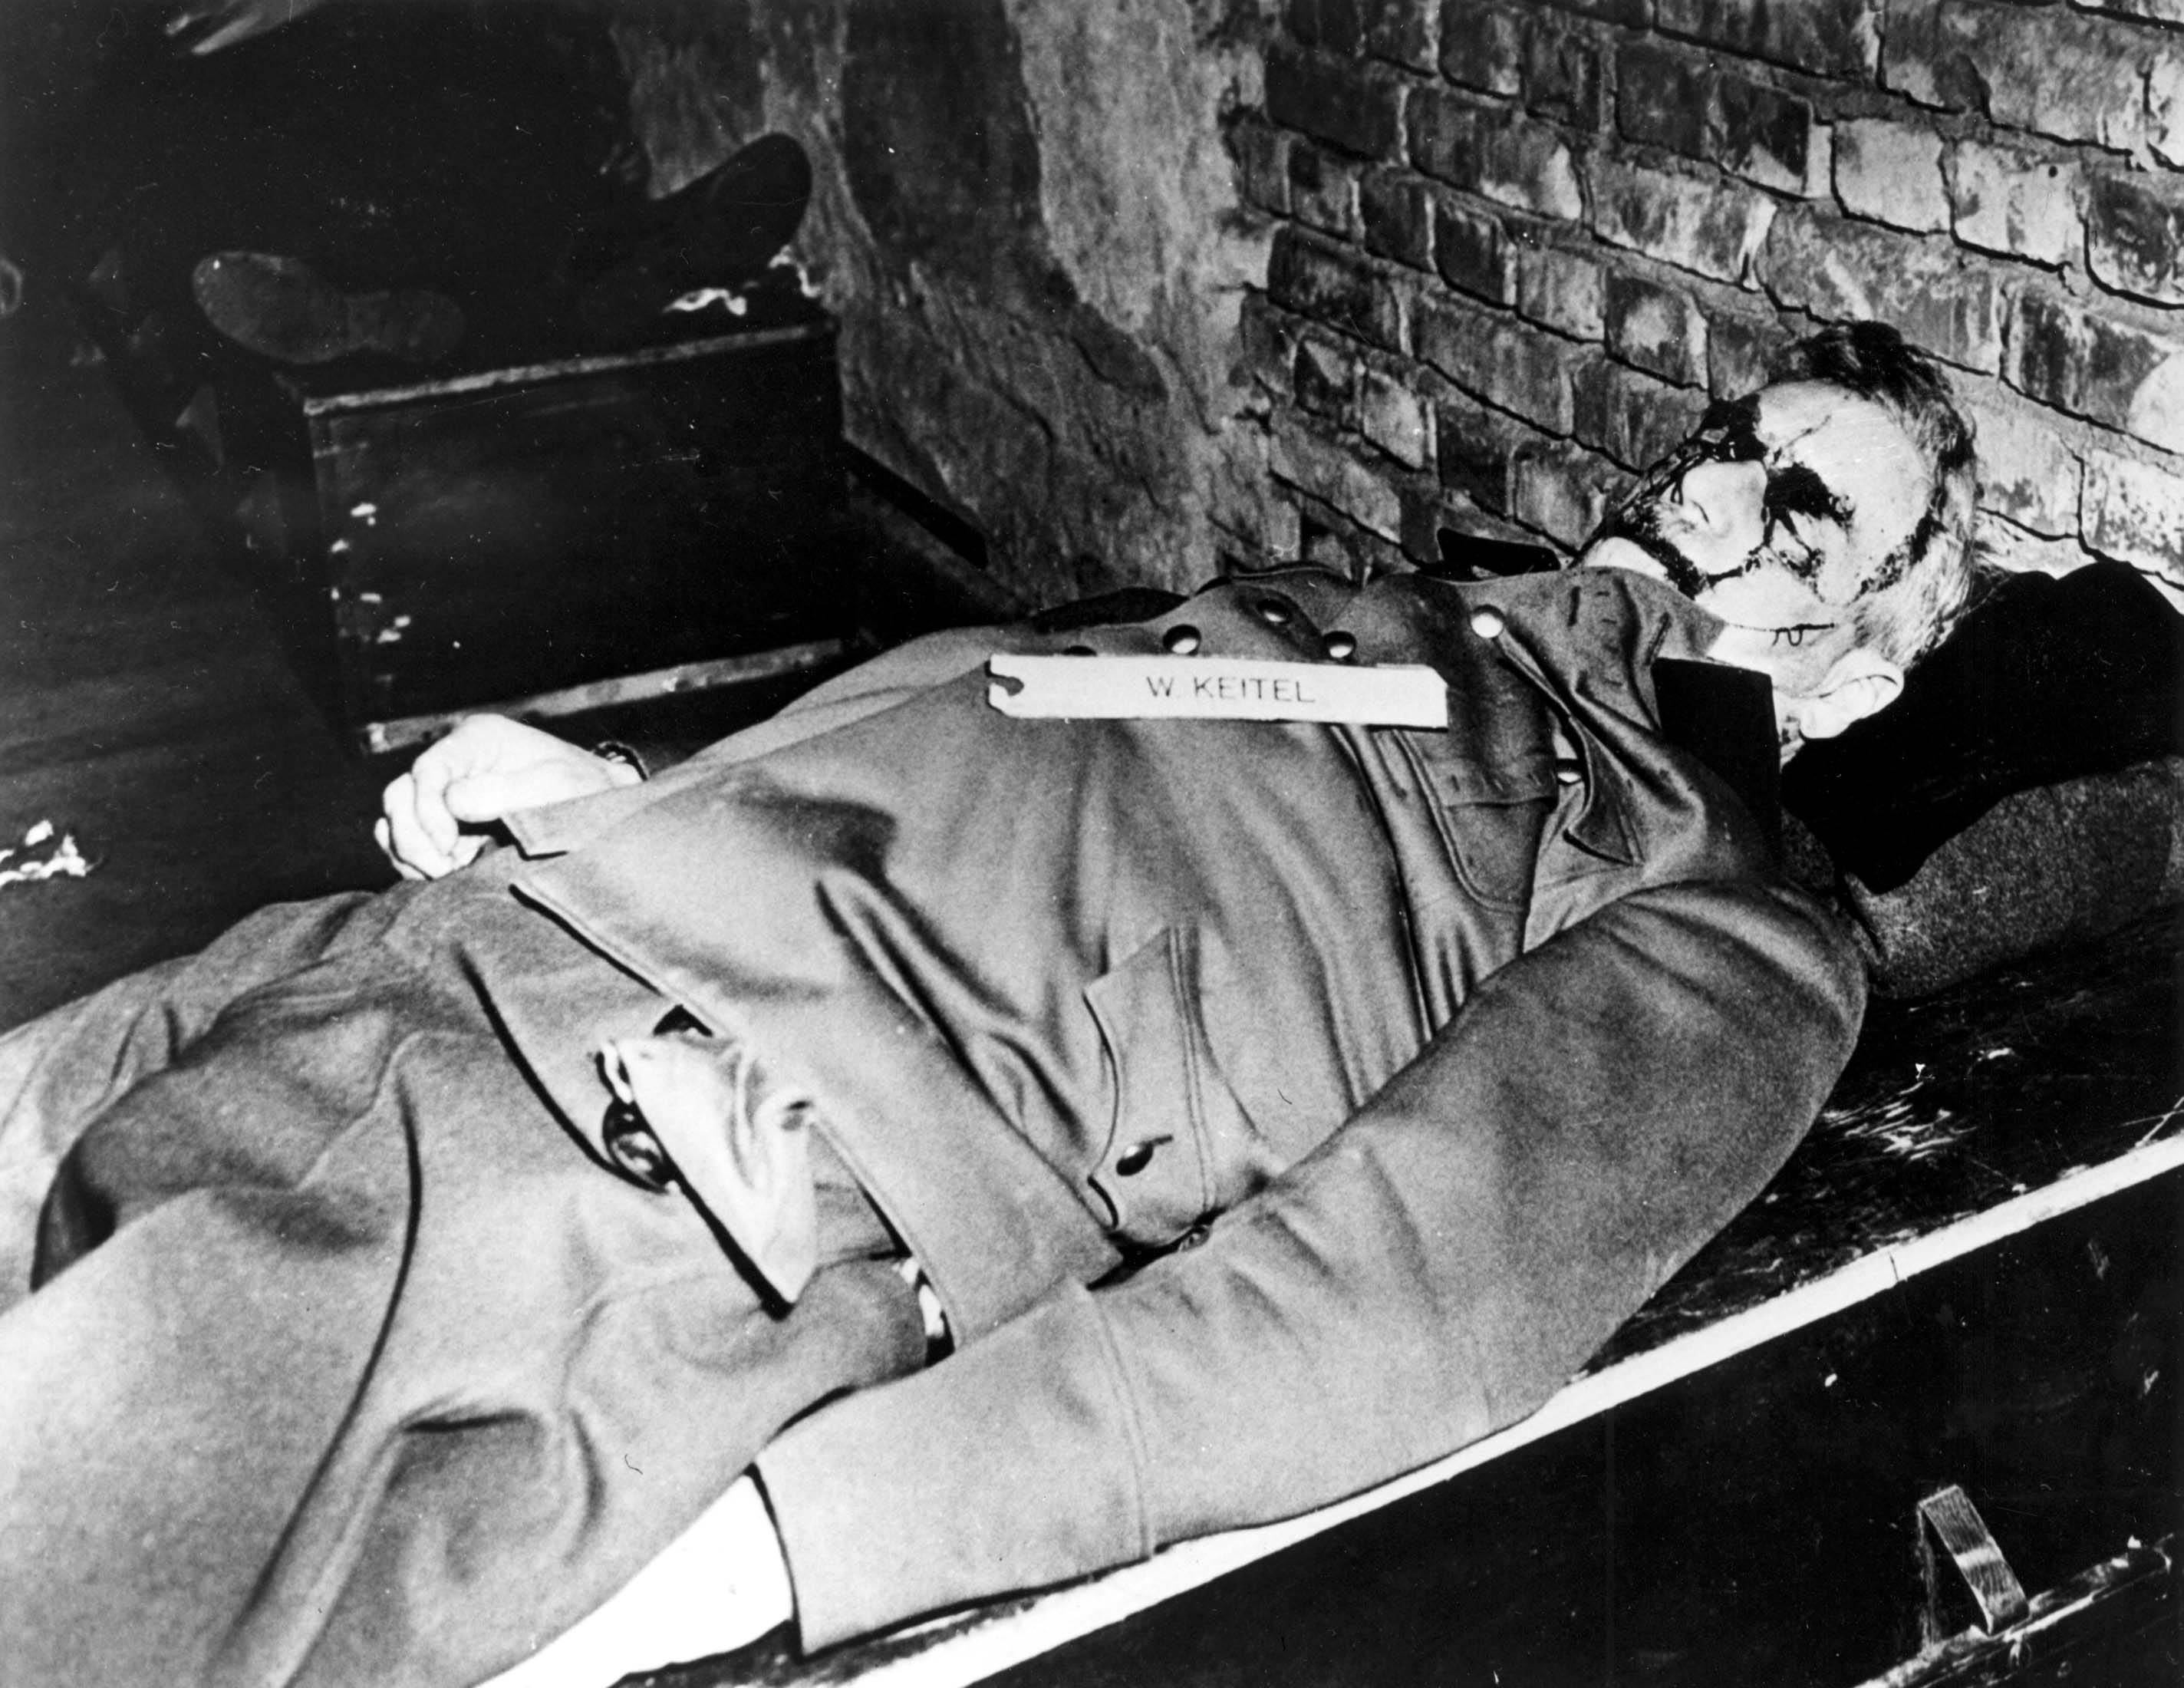 1946: Cruel Execution of Nazi Leaders in Nuremberg